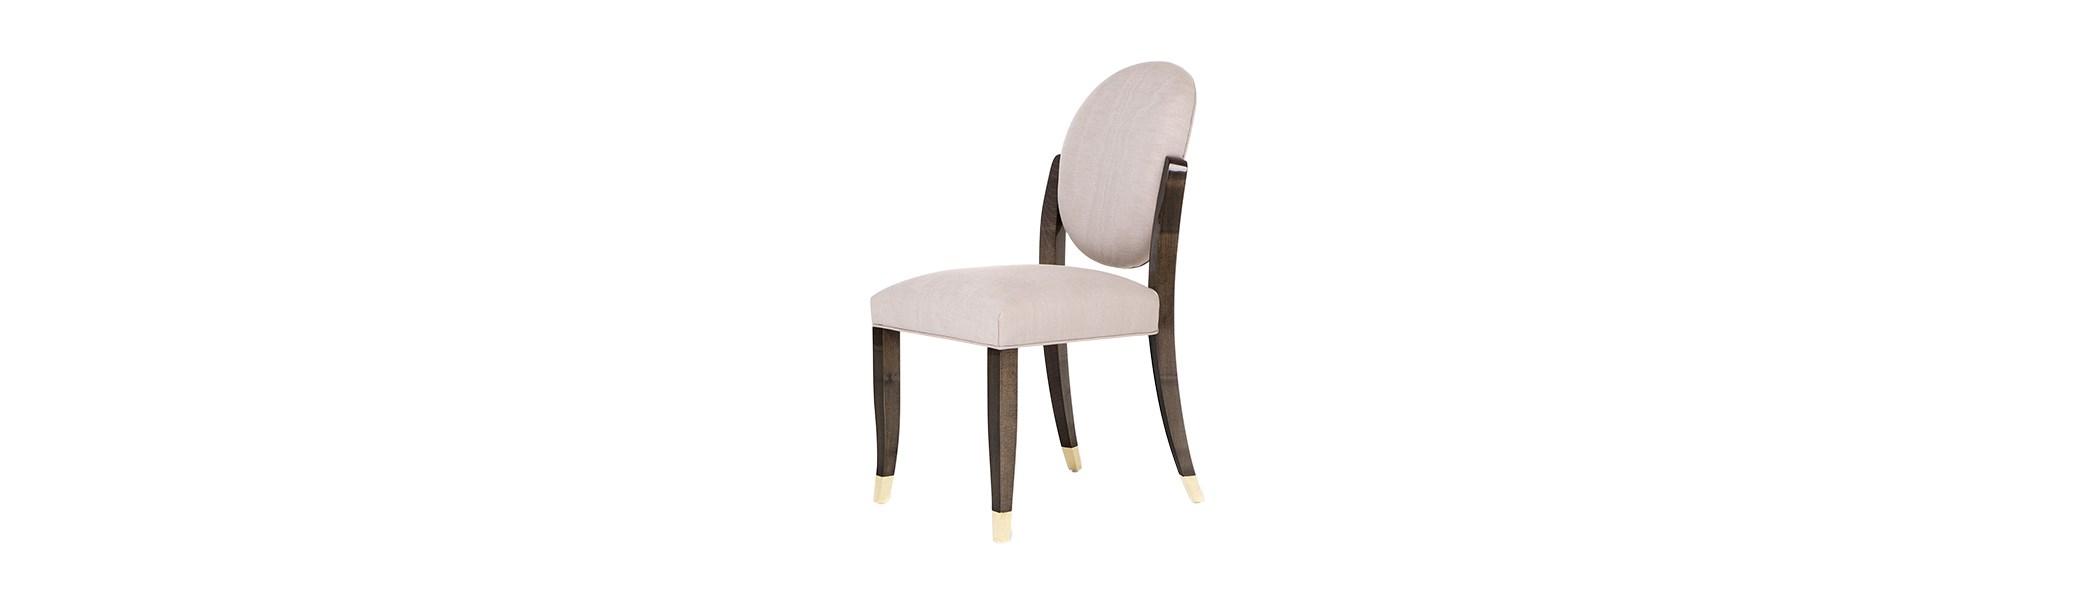 Un set di sedie come quella della foto conferisce allo spazio un aspetto morbido e seducente, quasi